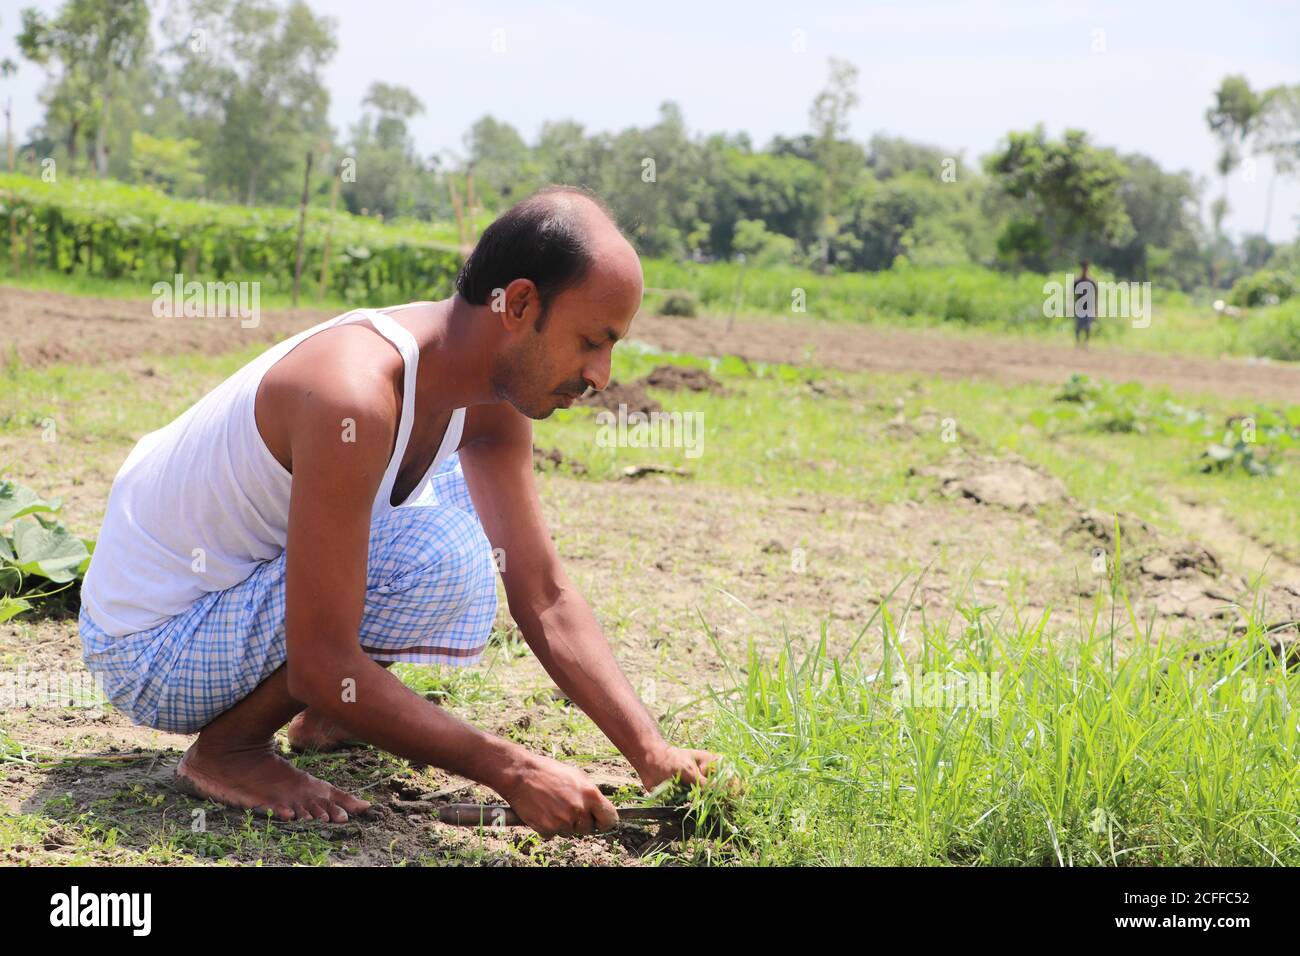 Asiatischer Bauer, der auf einem Gemüsefeld arbeitet, Unkraut reinigt Stockfoto